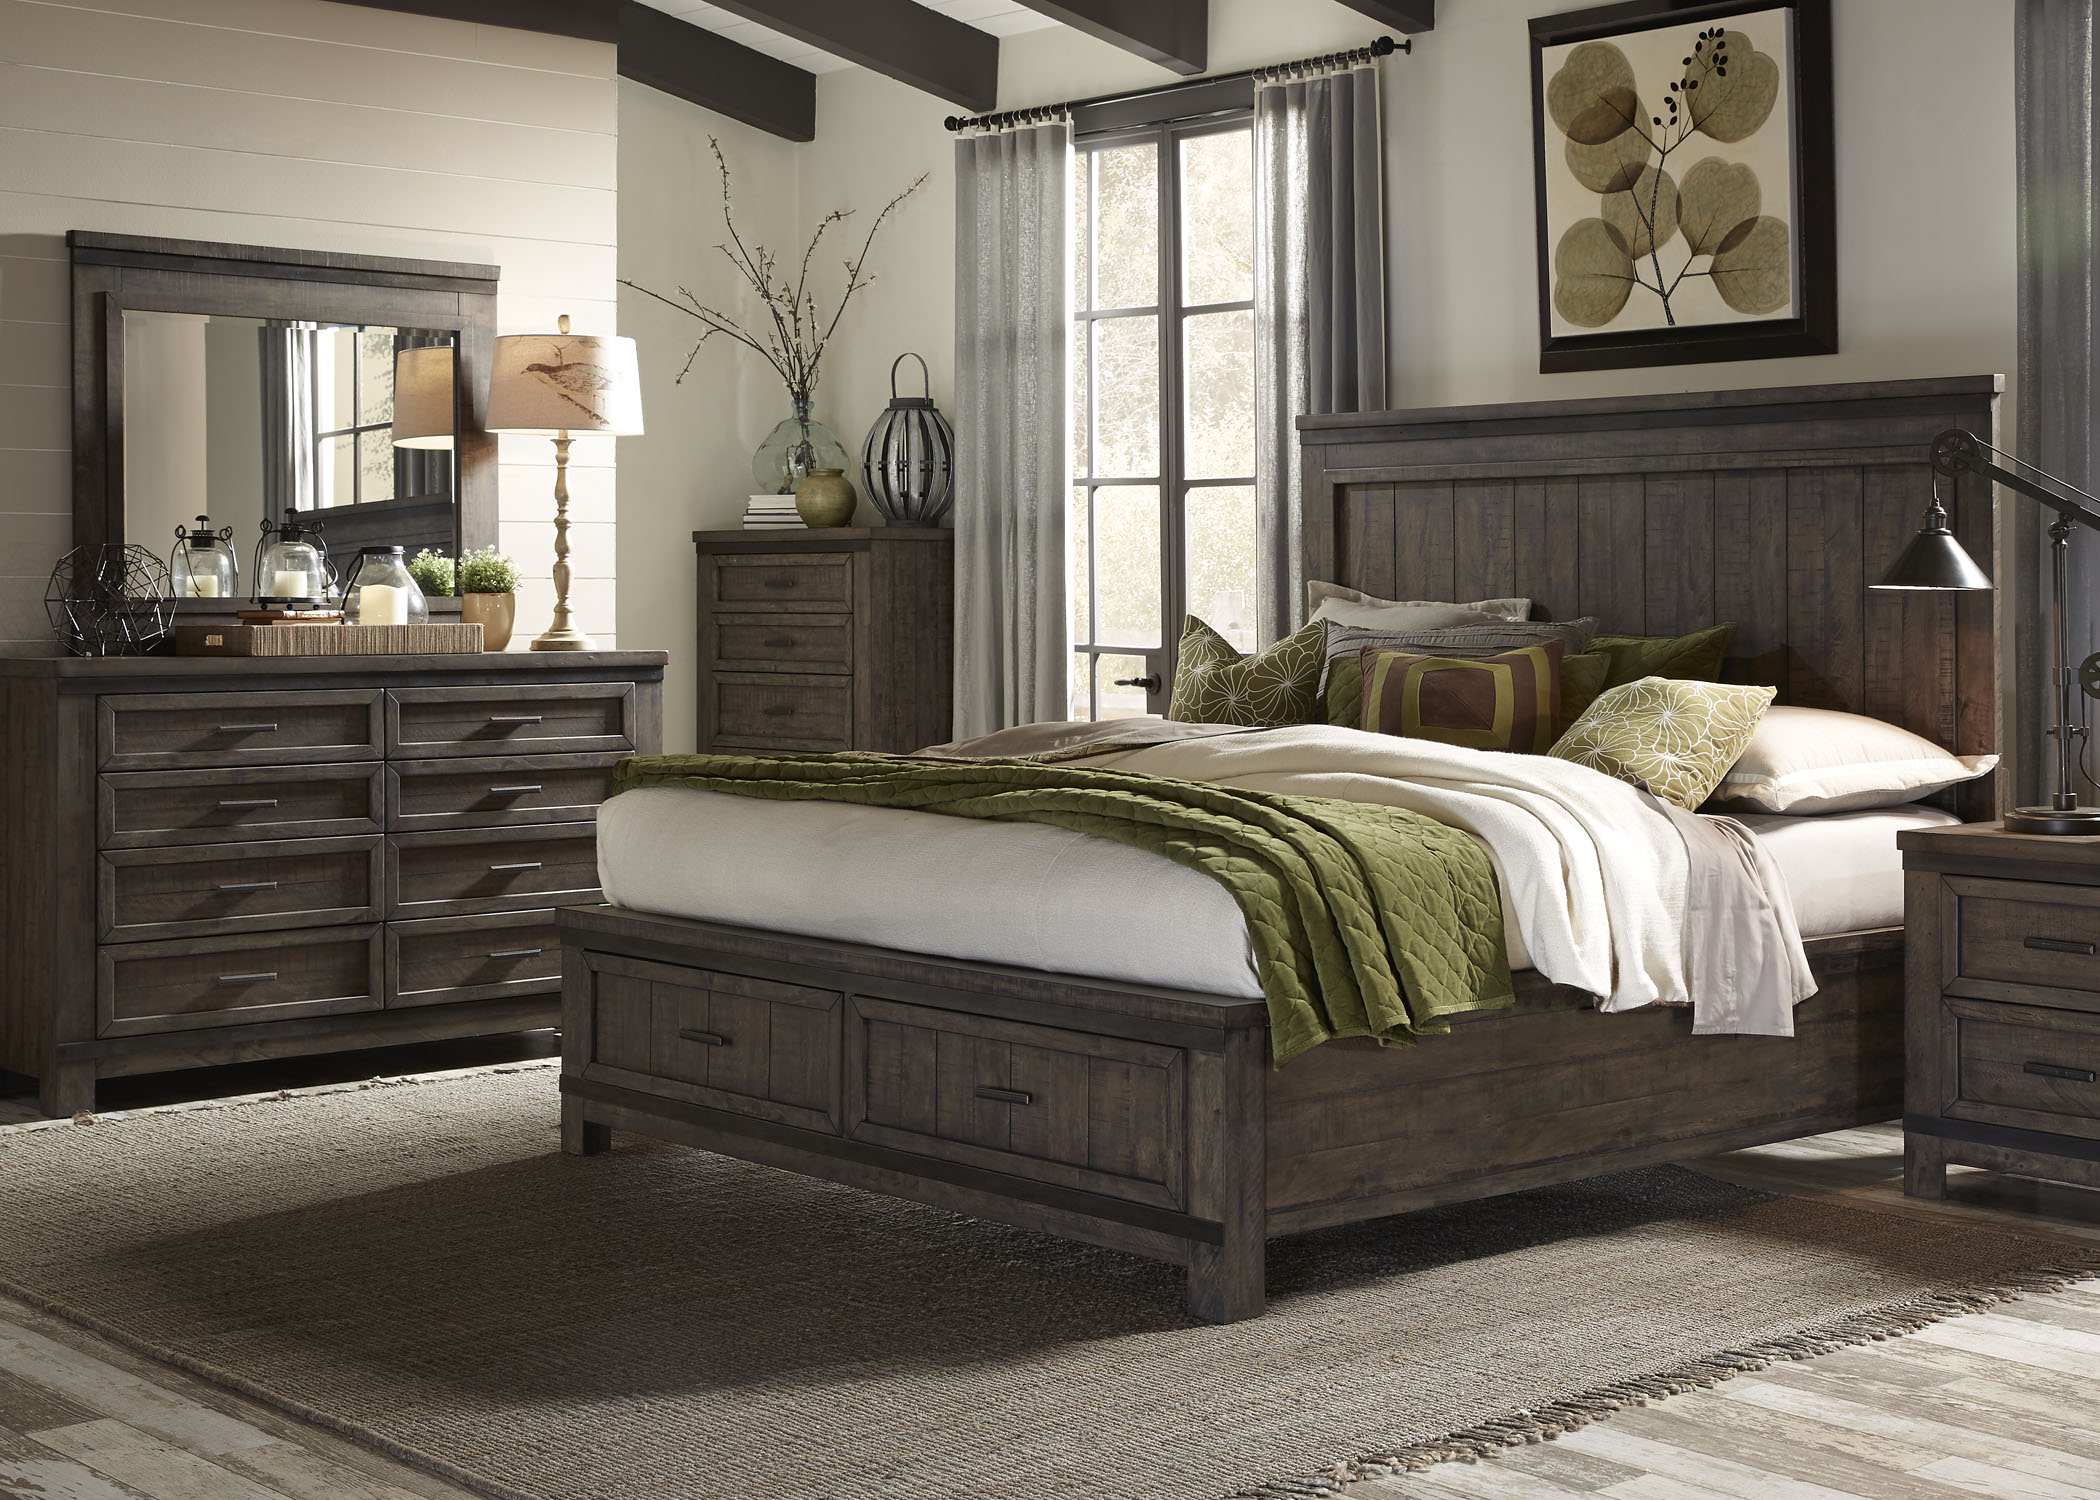 Liberty Furniture Thornwood Hills 3 Piece Rock Beaten Gray Queen Storage Bedroom Set